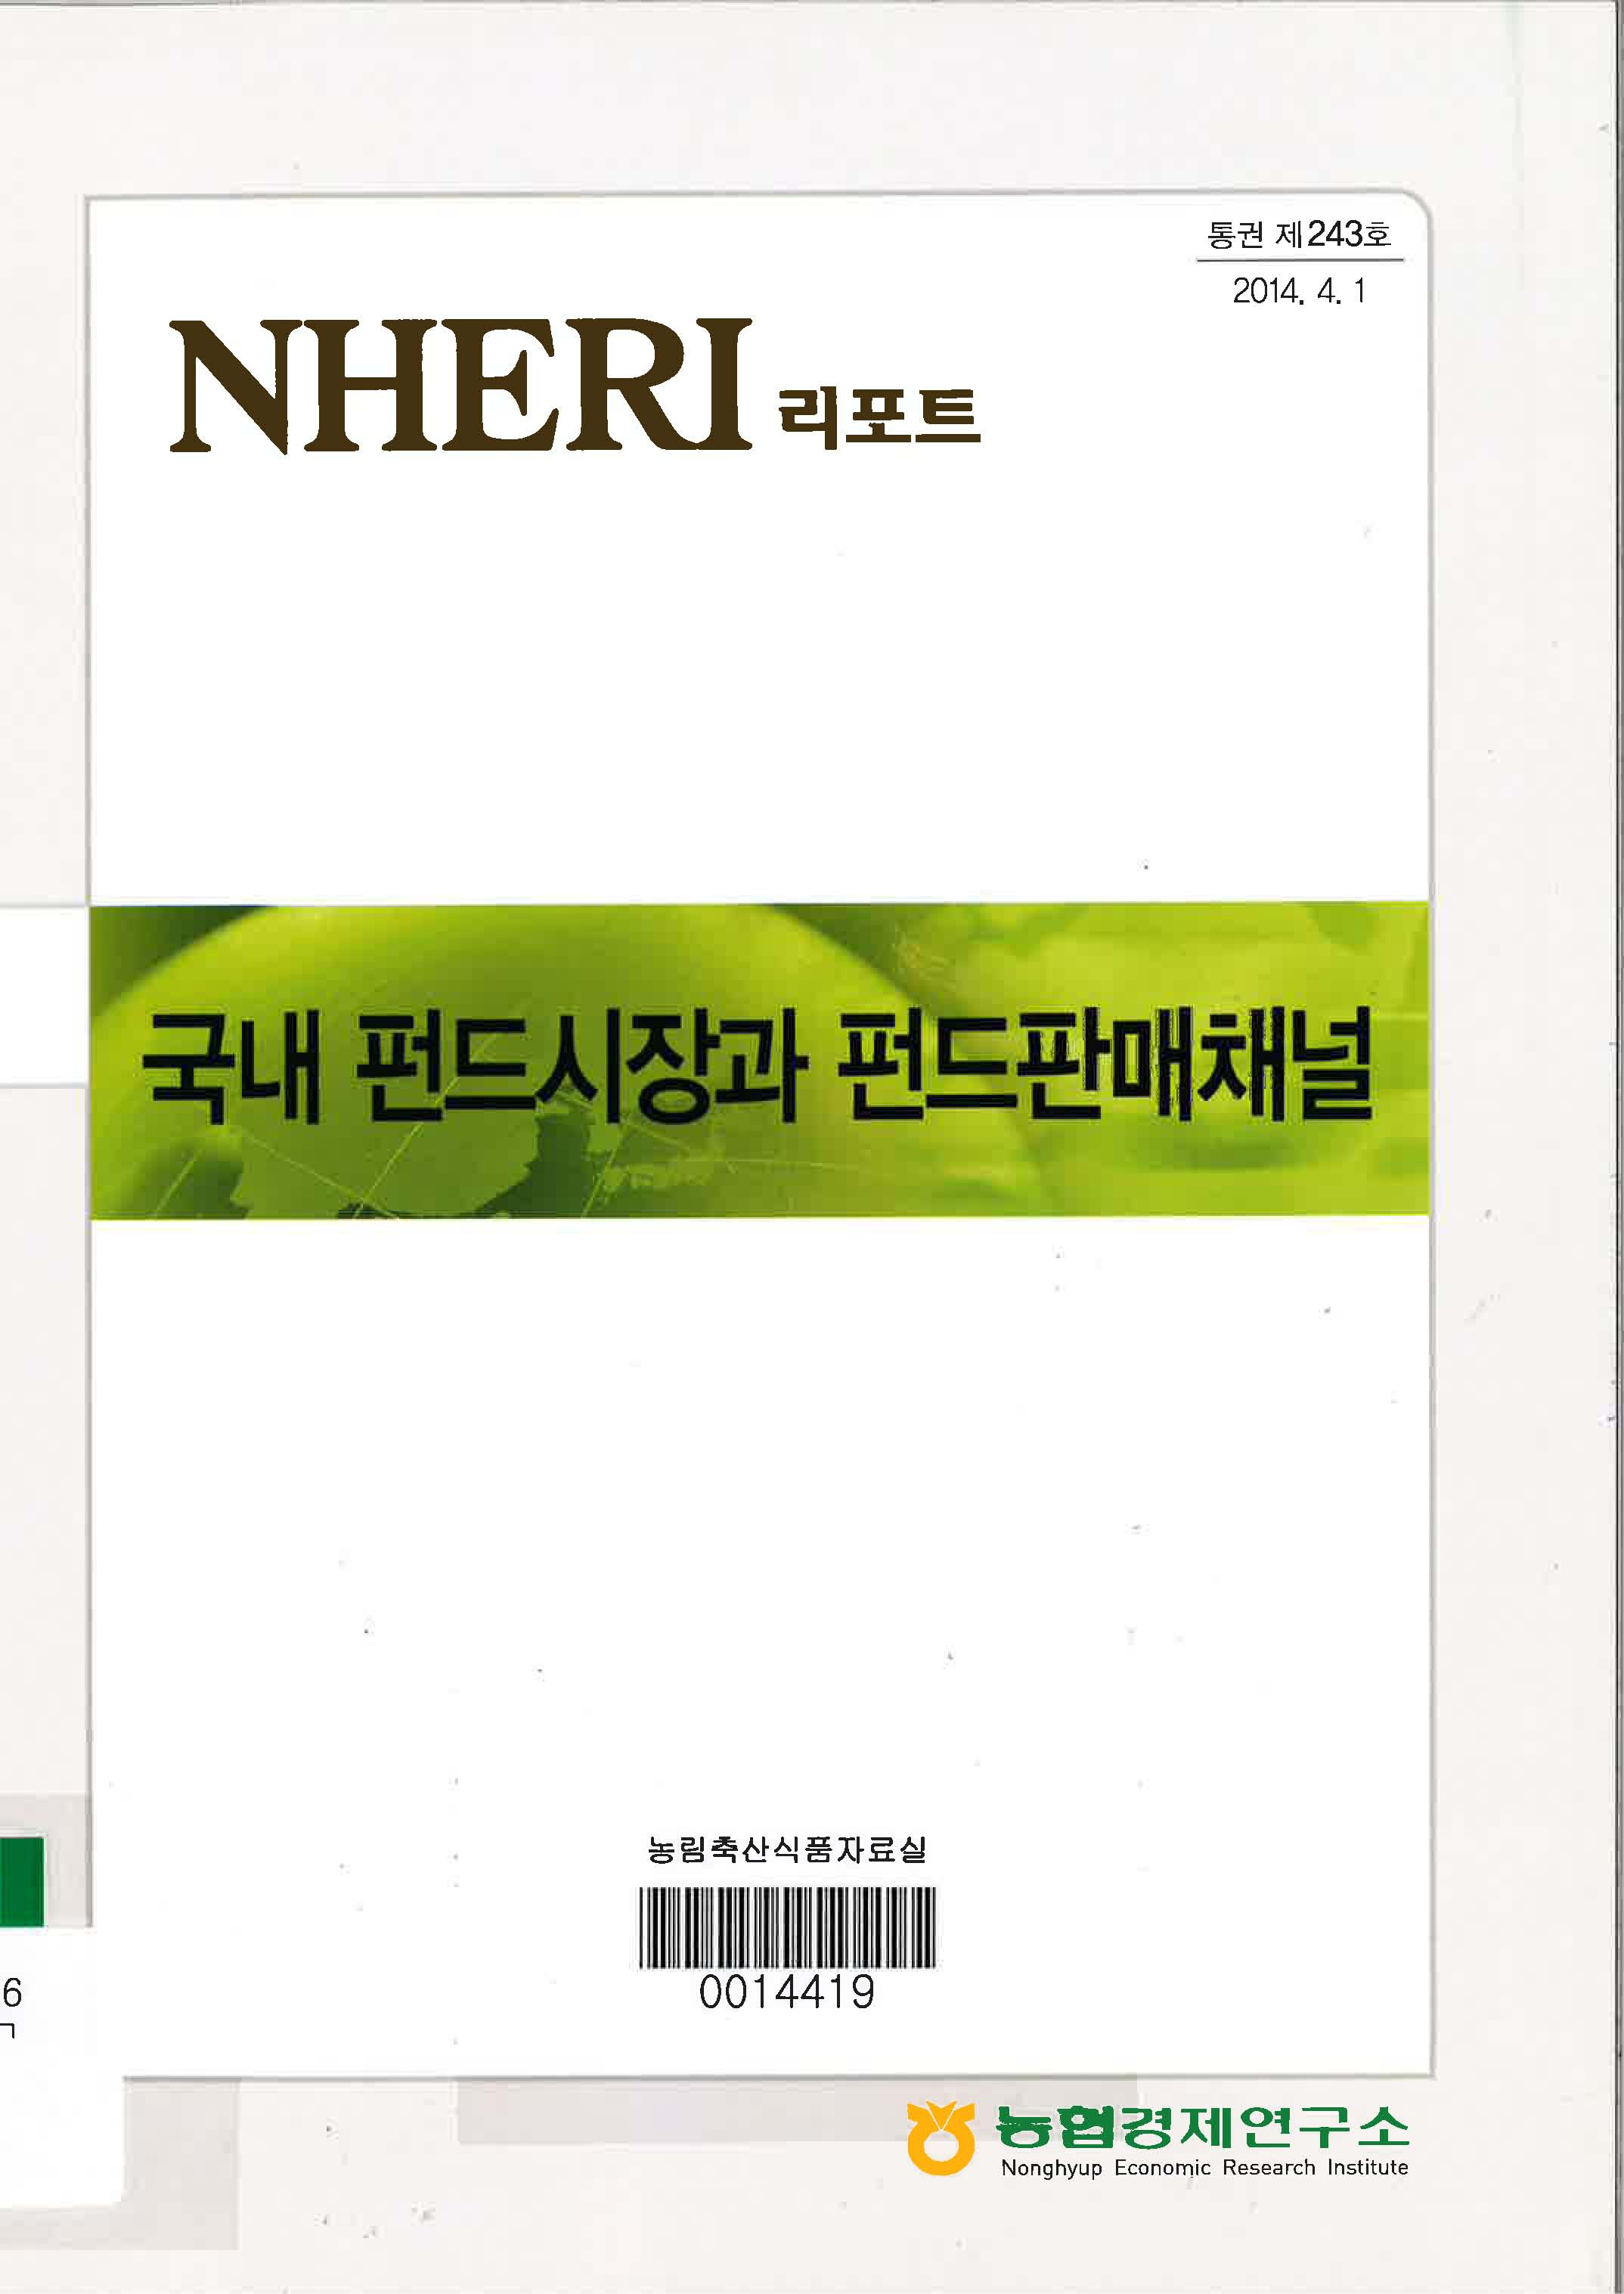 국내 펀드시장과 펀드판매채널 / 김대현 작성 ; 윤건용 감수